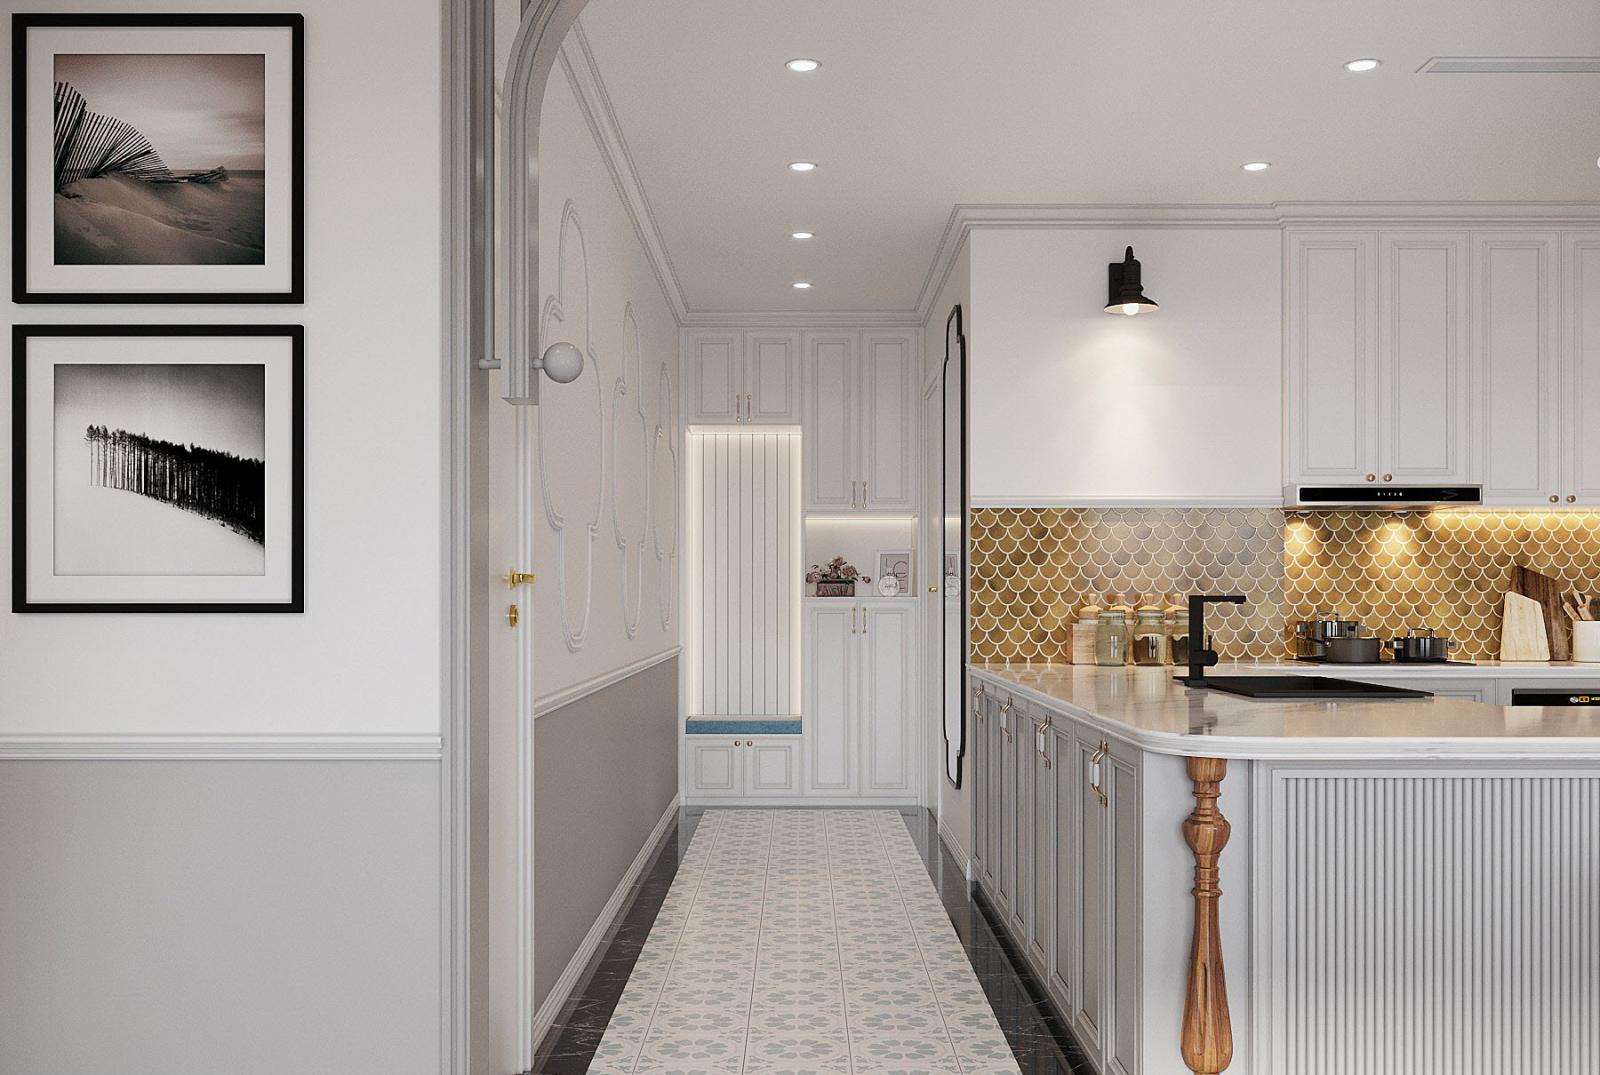 Toàn bộ khu vực lối vào dẫn thẳng vào gian bếp được thiết kế với tông màu trắng chủ đạo cùng hệ tủ lưu trữ cao kịch trần gọn đẹp.